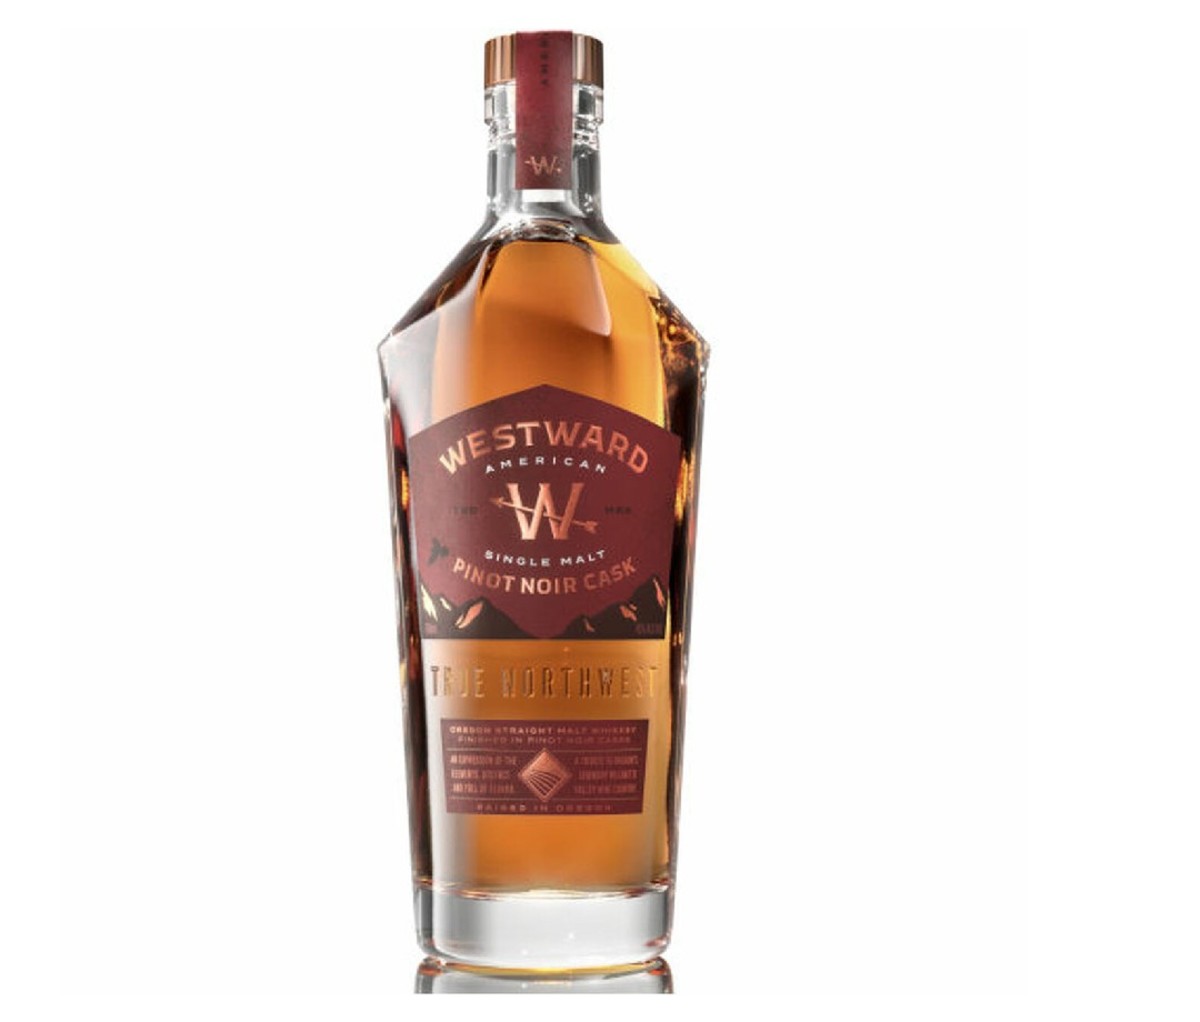 Bottle of Westward Pinot Noir Cask American Single Malt Whiskey